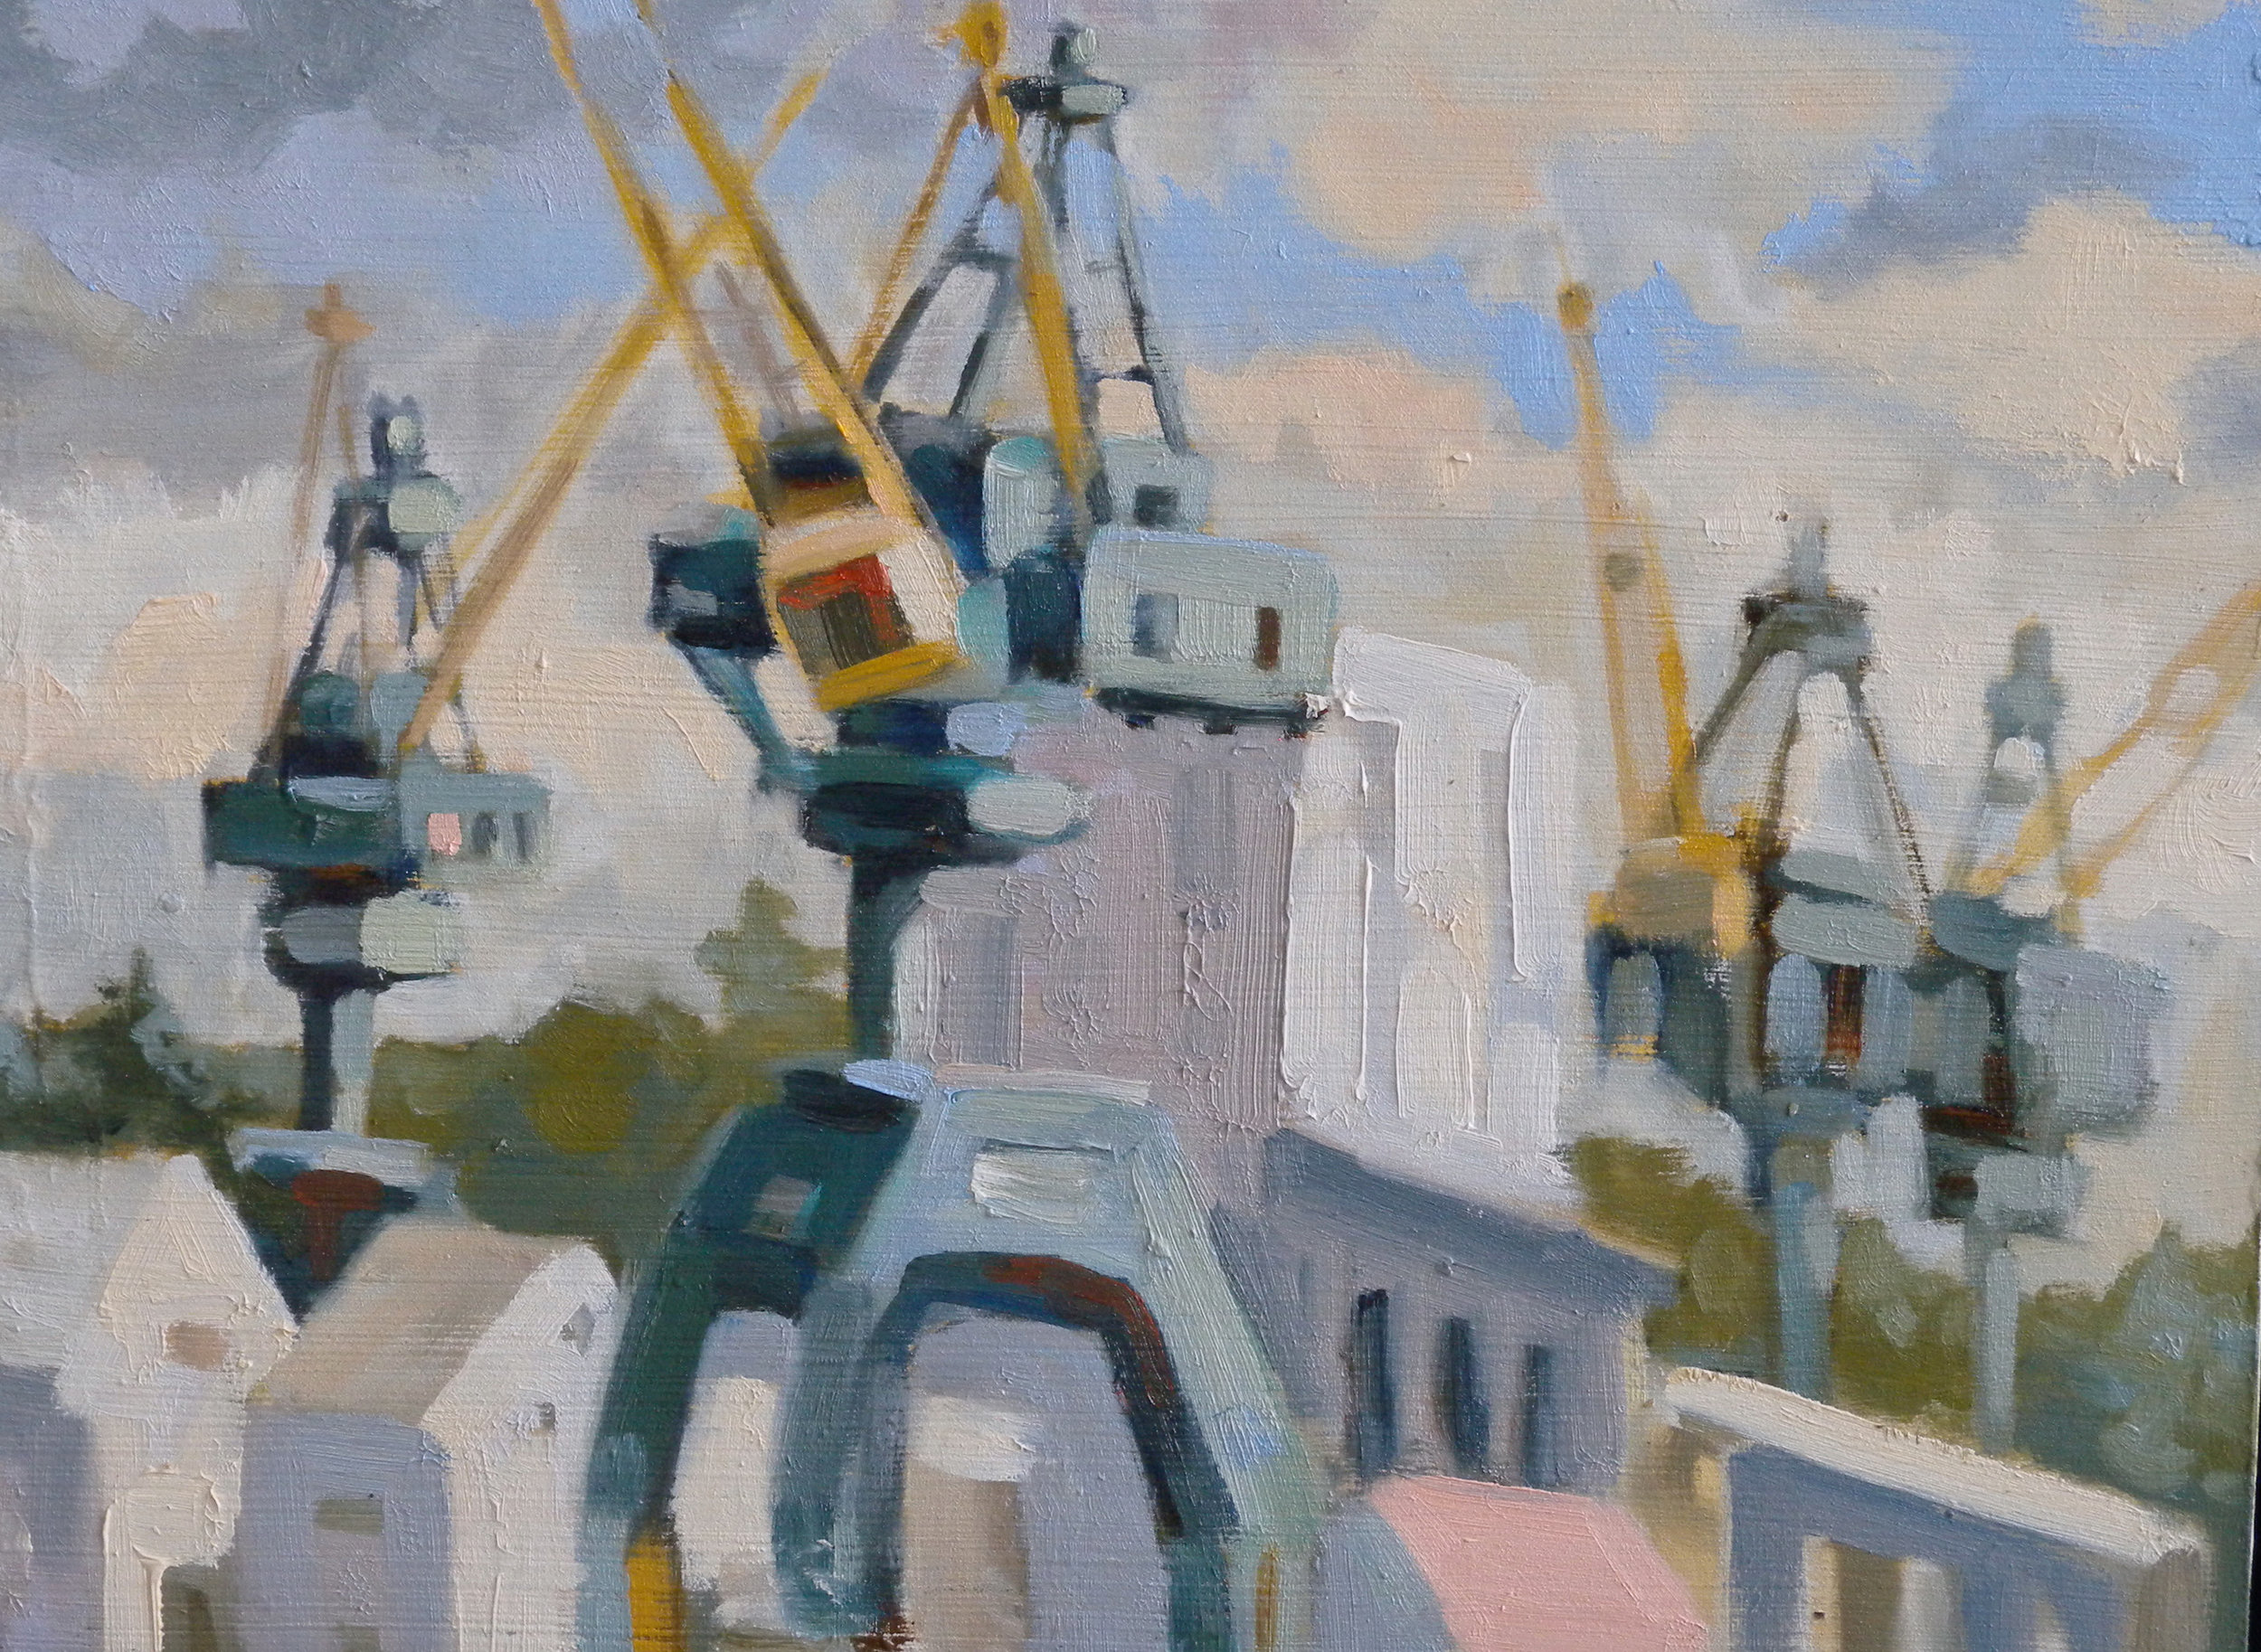 Four Cranes, oils, 9 x 12